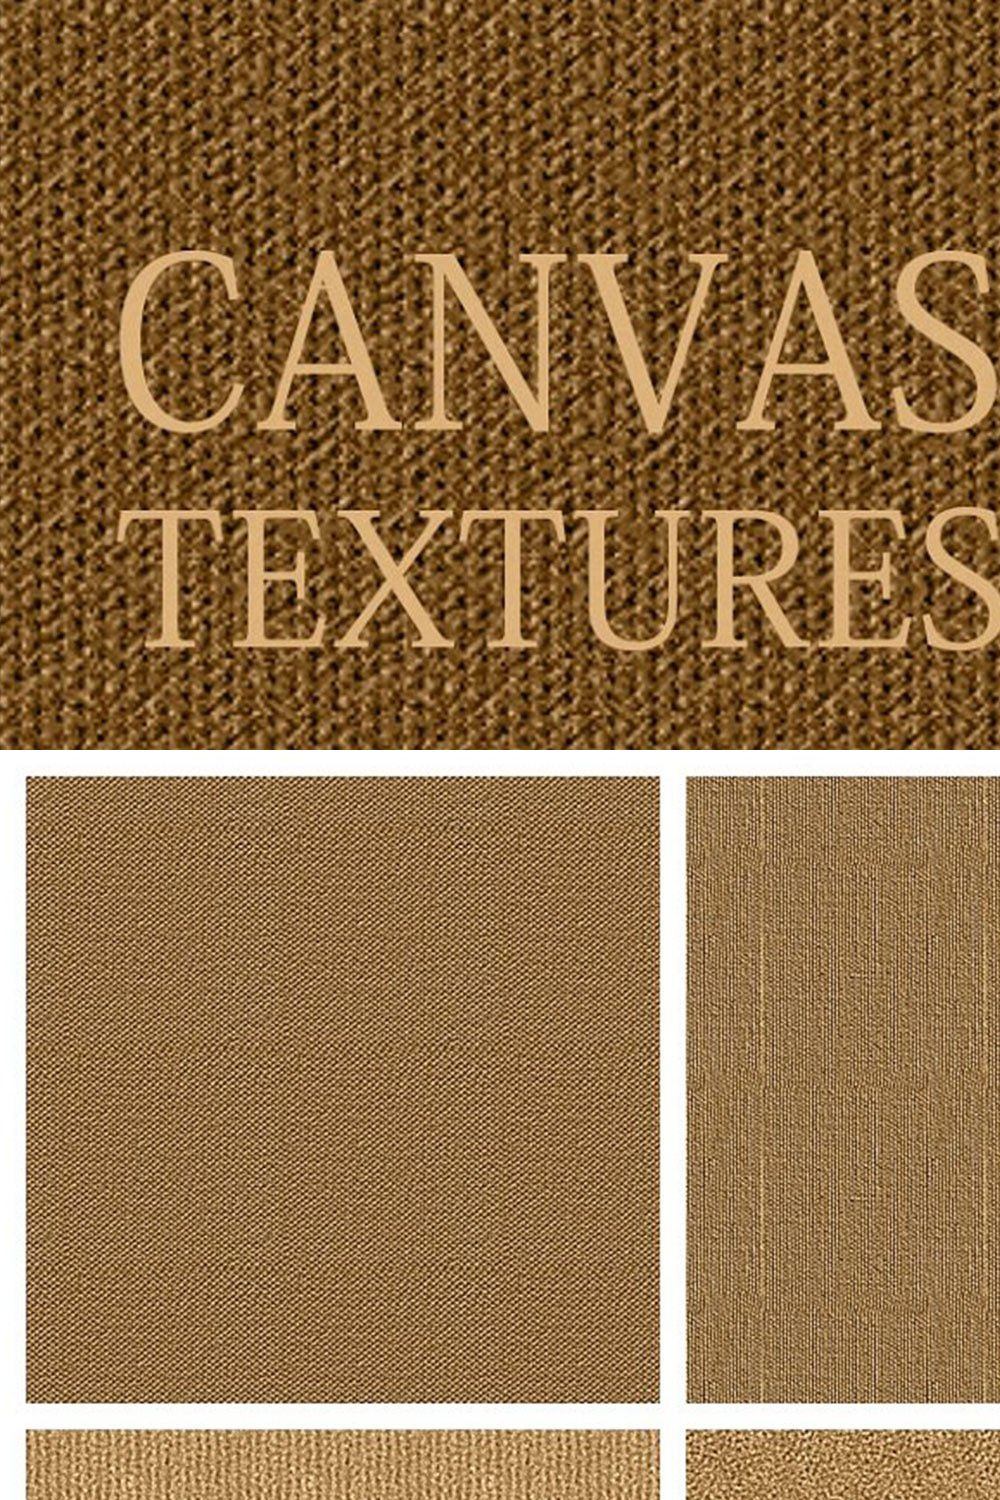 Canvas texture pinterest preview image.